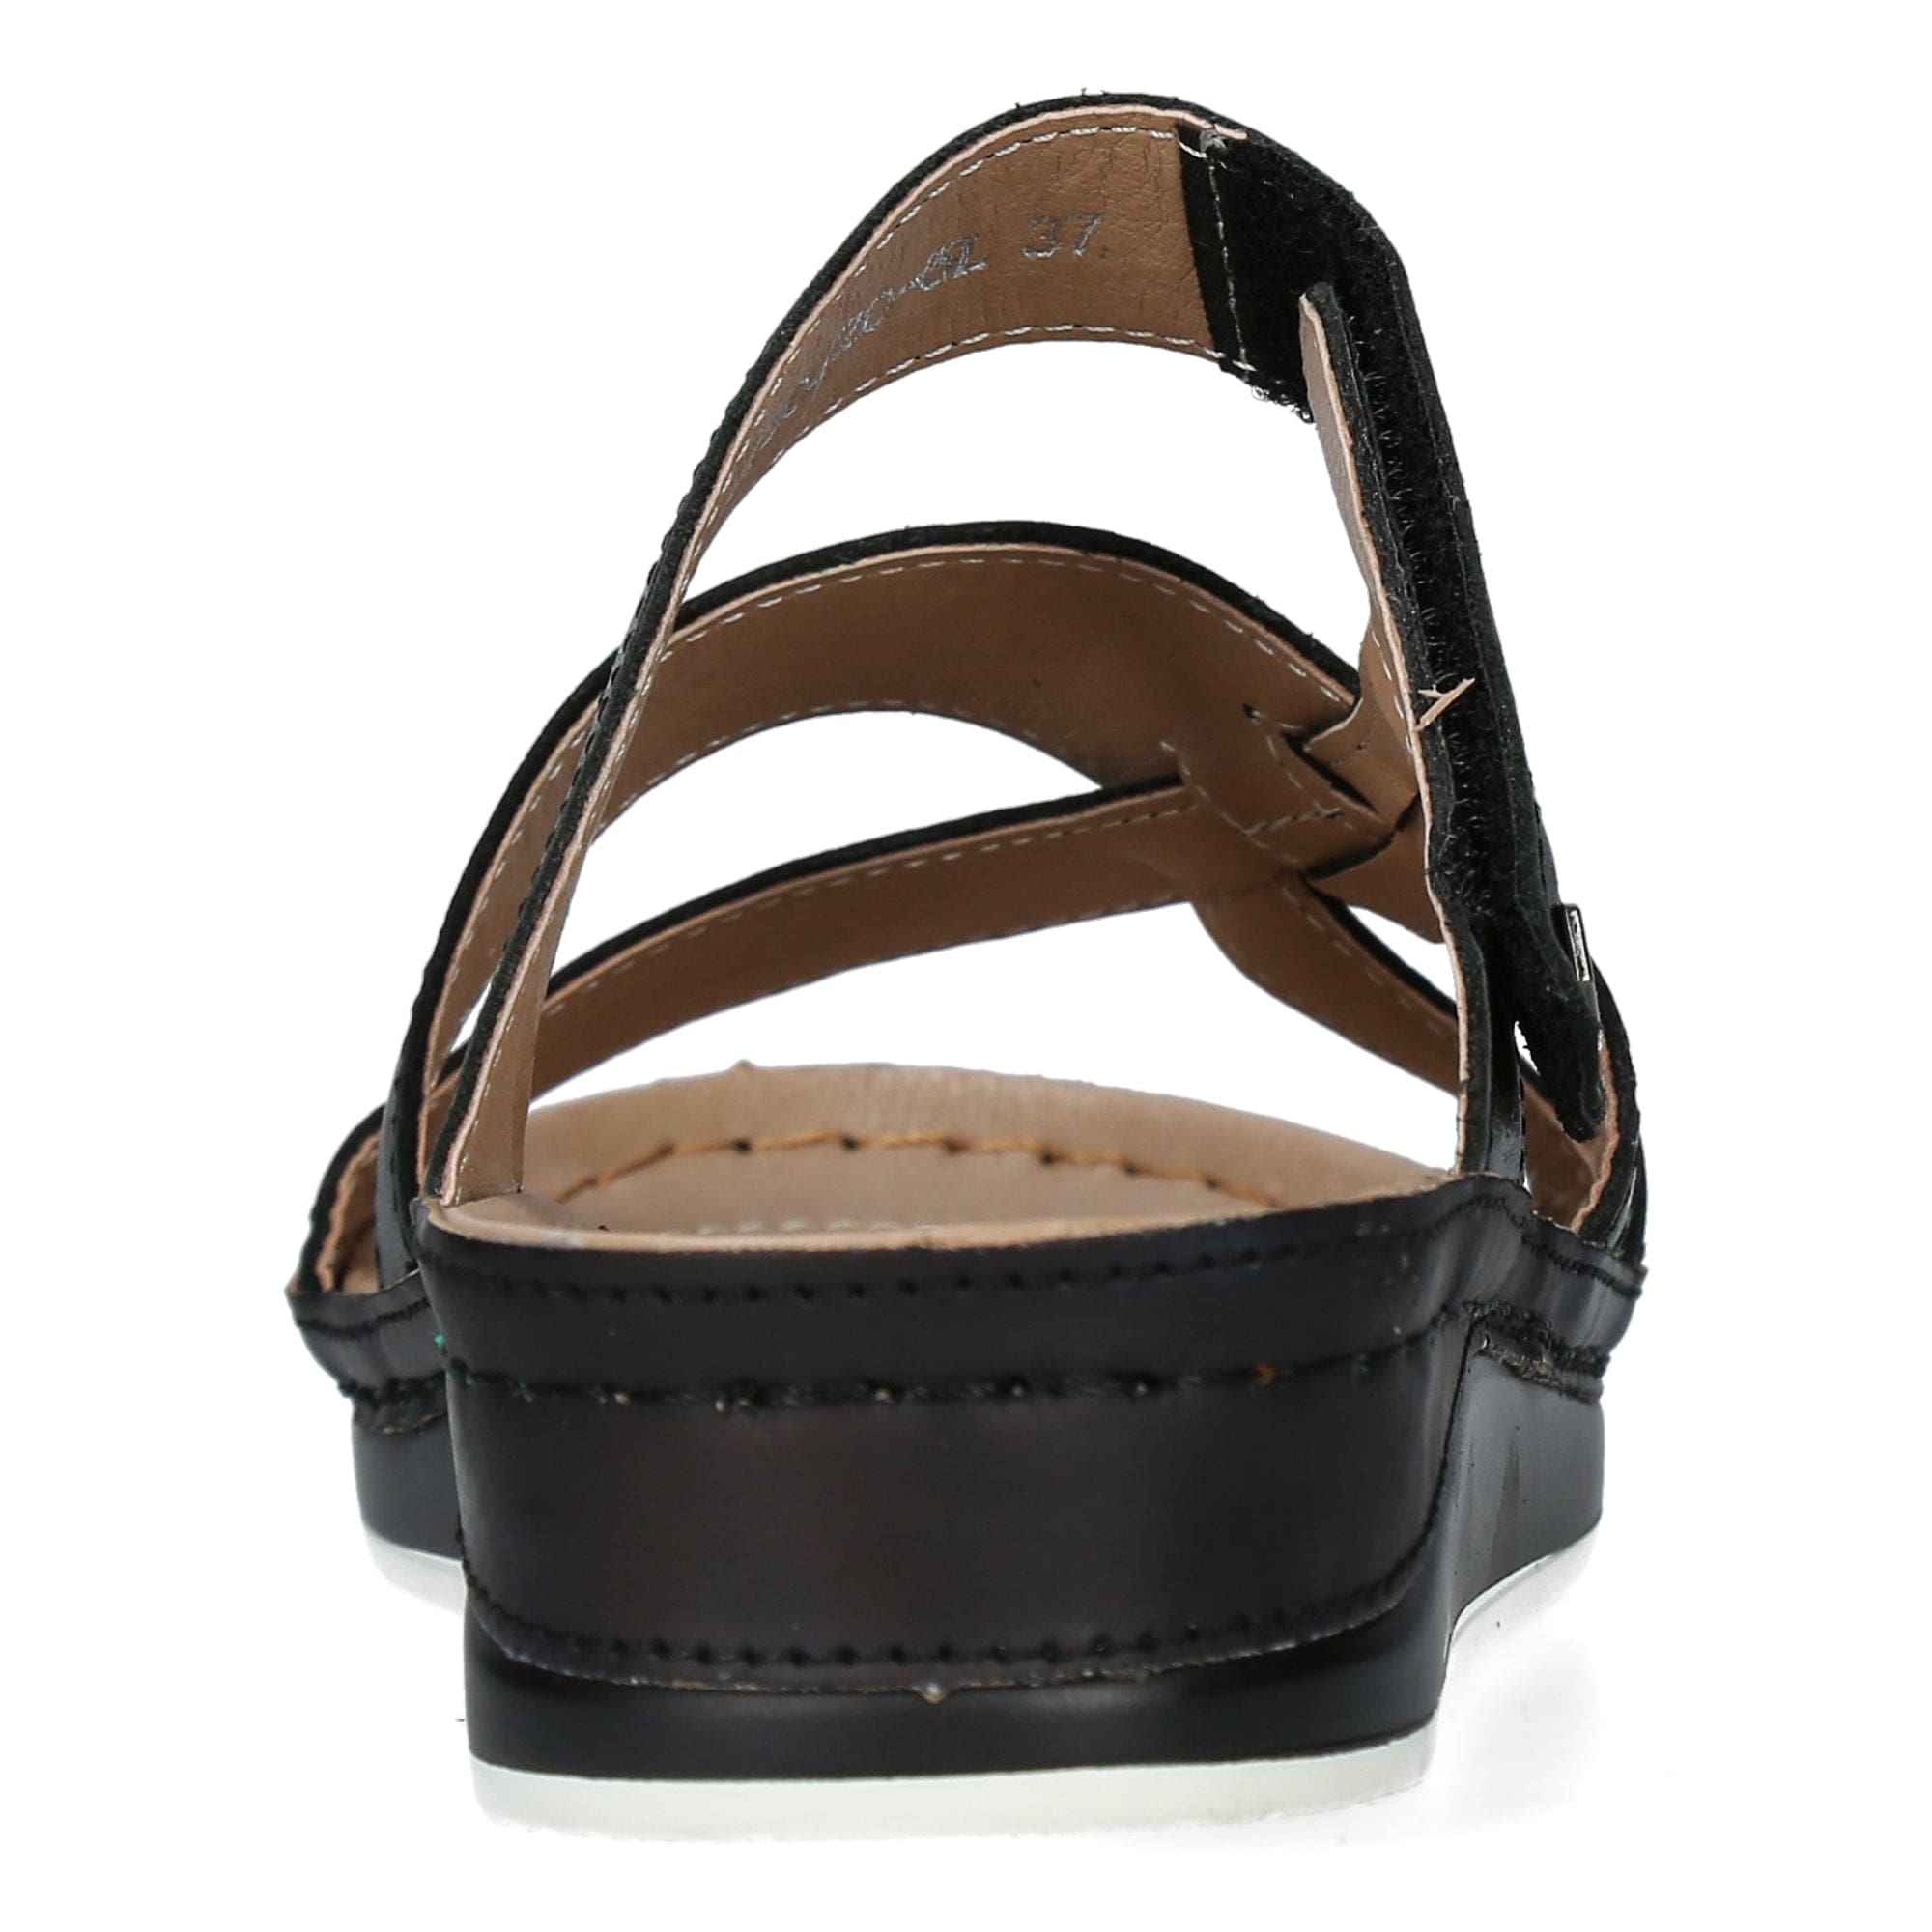 Zapato BRCUELO 0521 - Mule